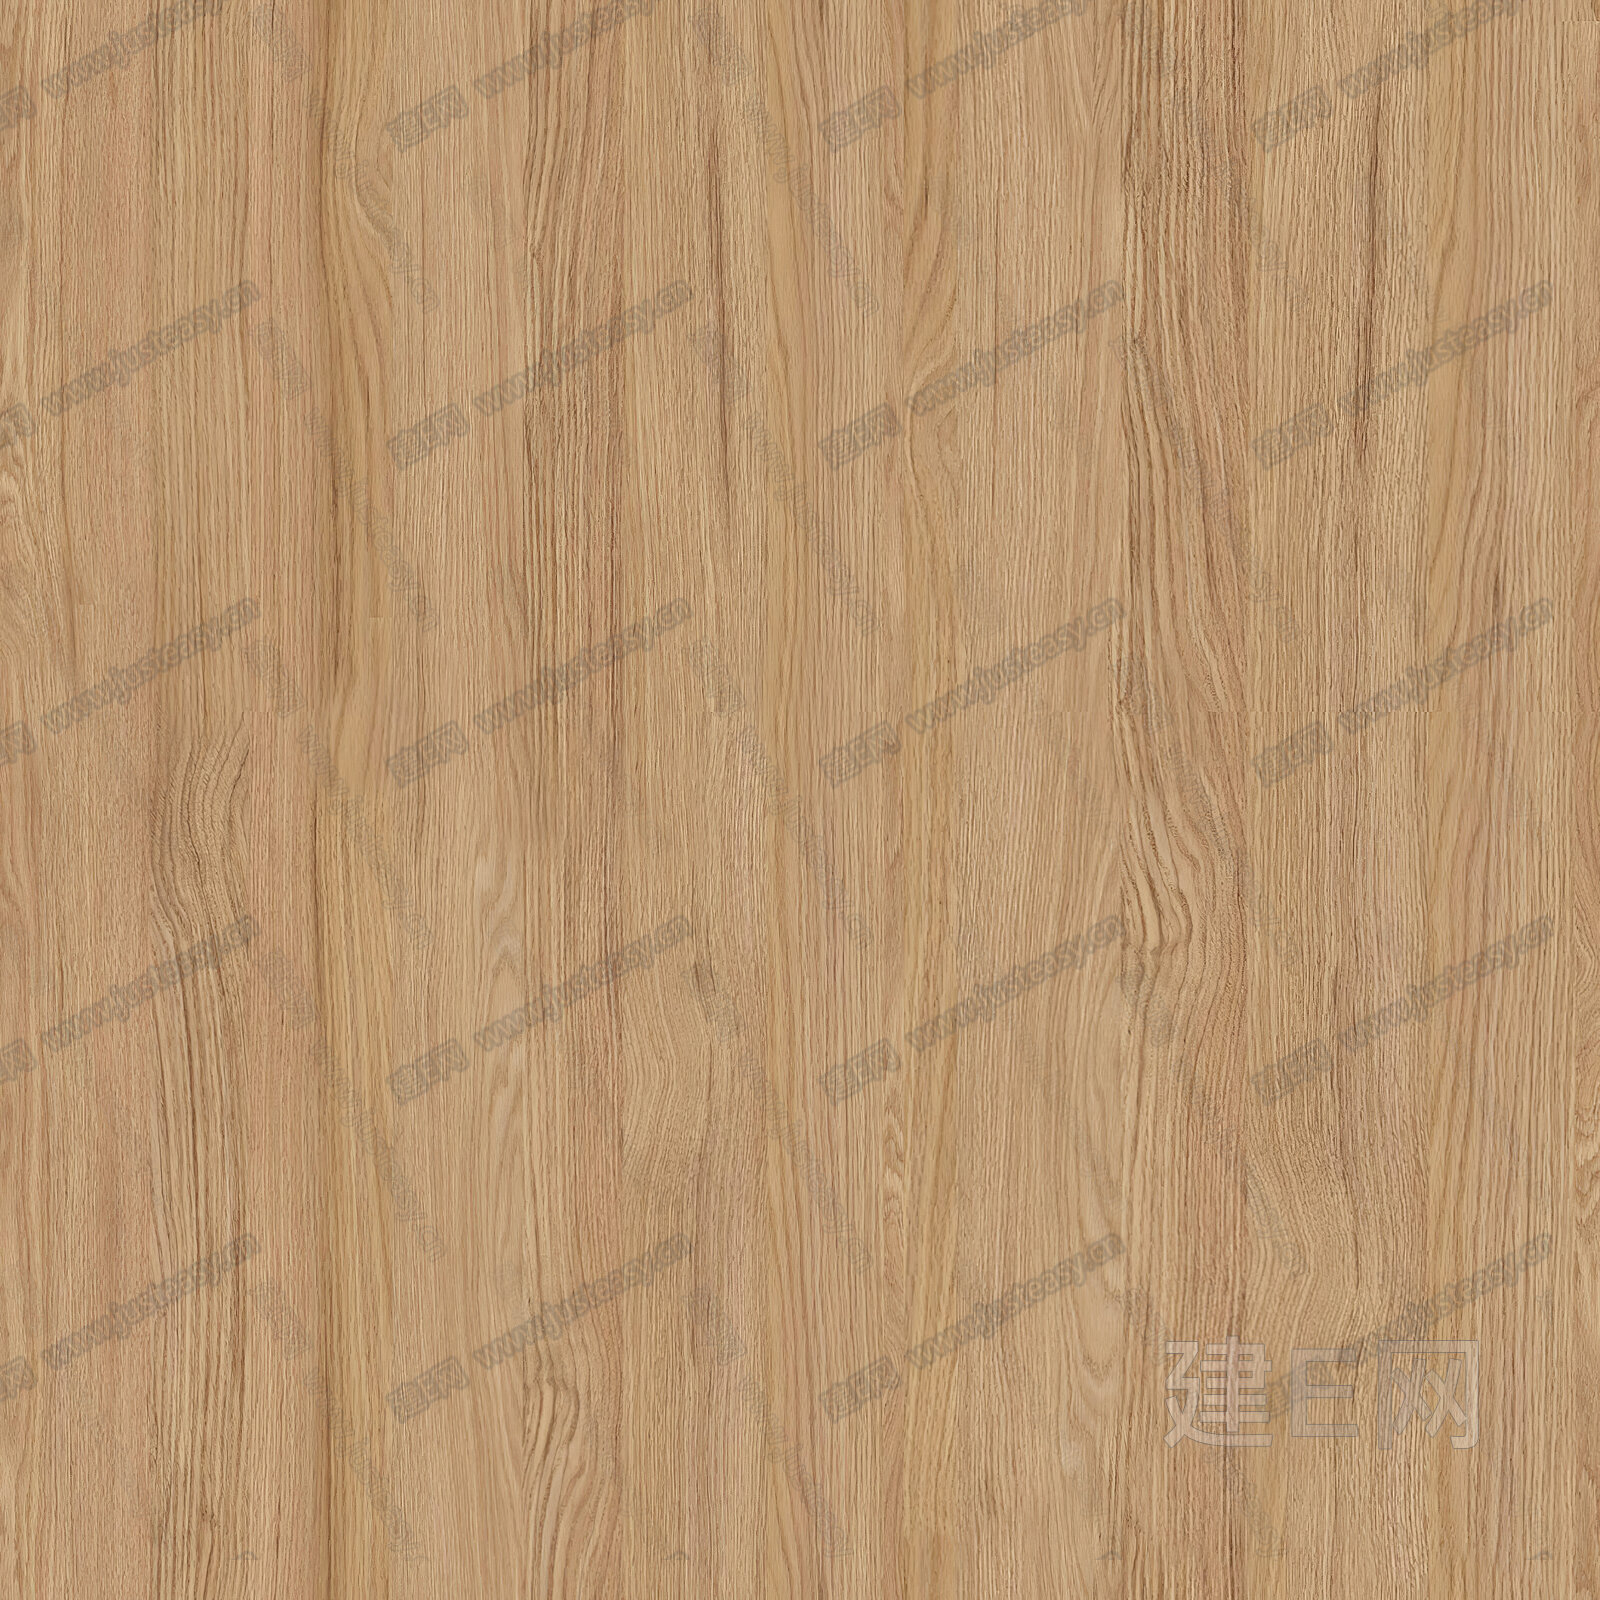 原木木纹木饰面3d贴图下载